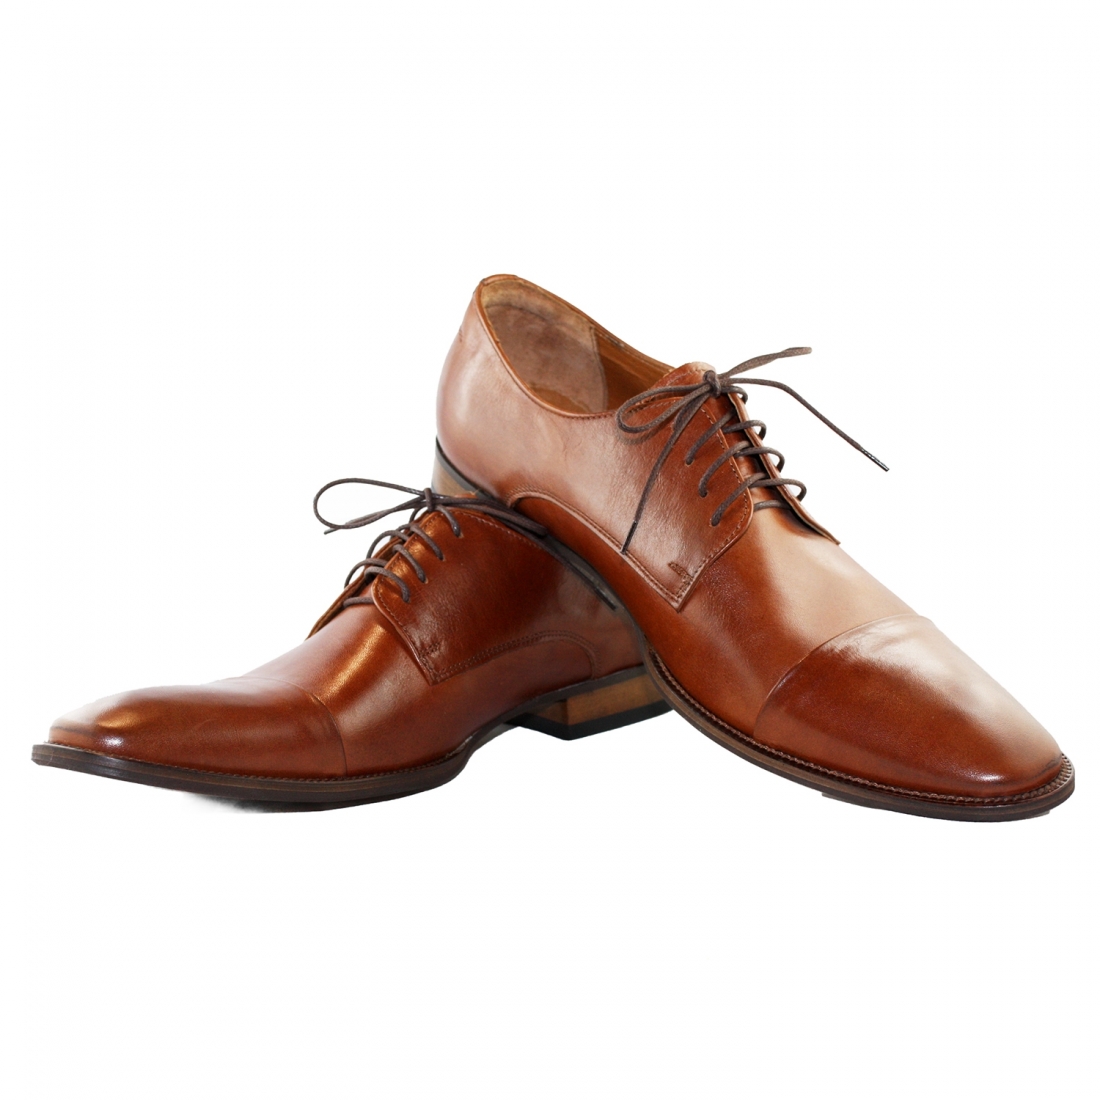 Modello Cavalerro - Scarpe Classiche - Handmade Colorful Italian Leather Shoes